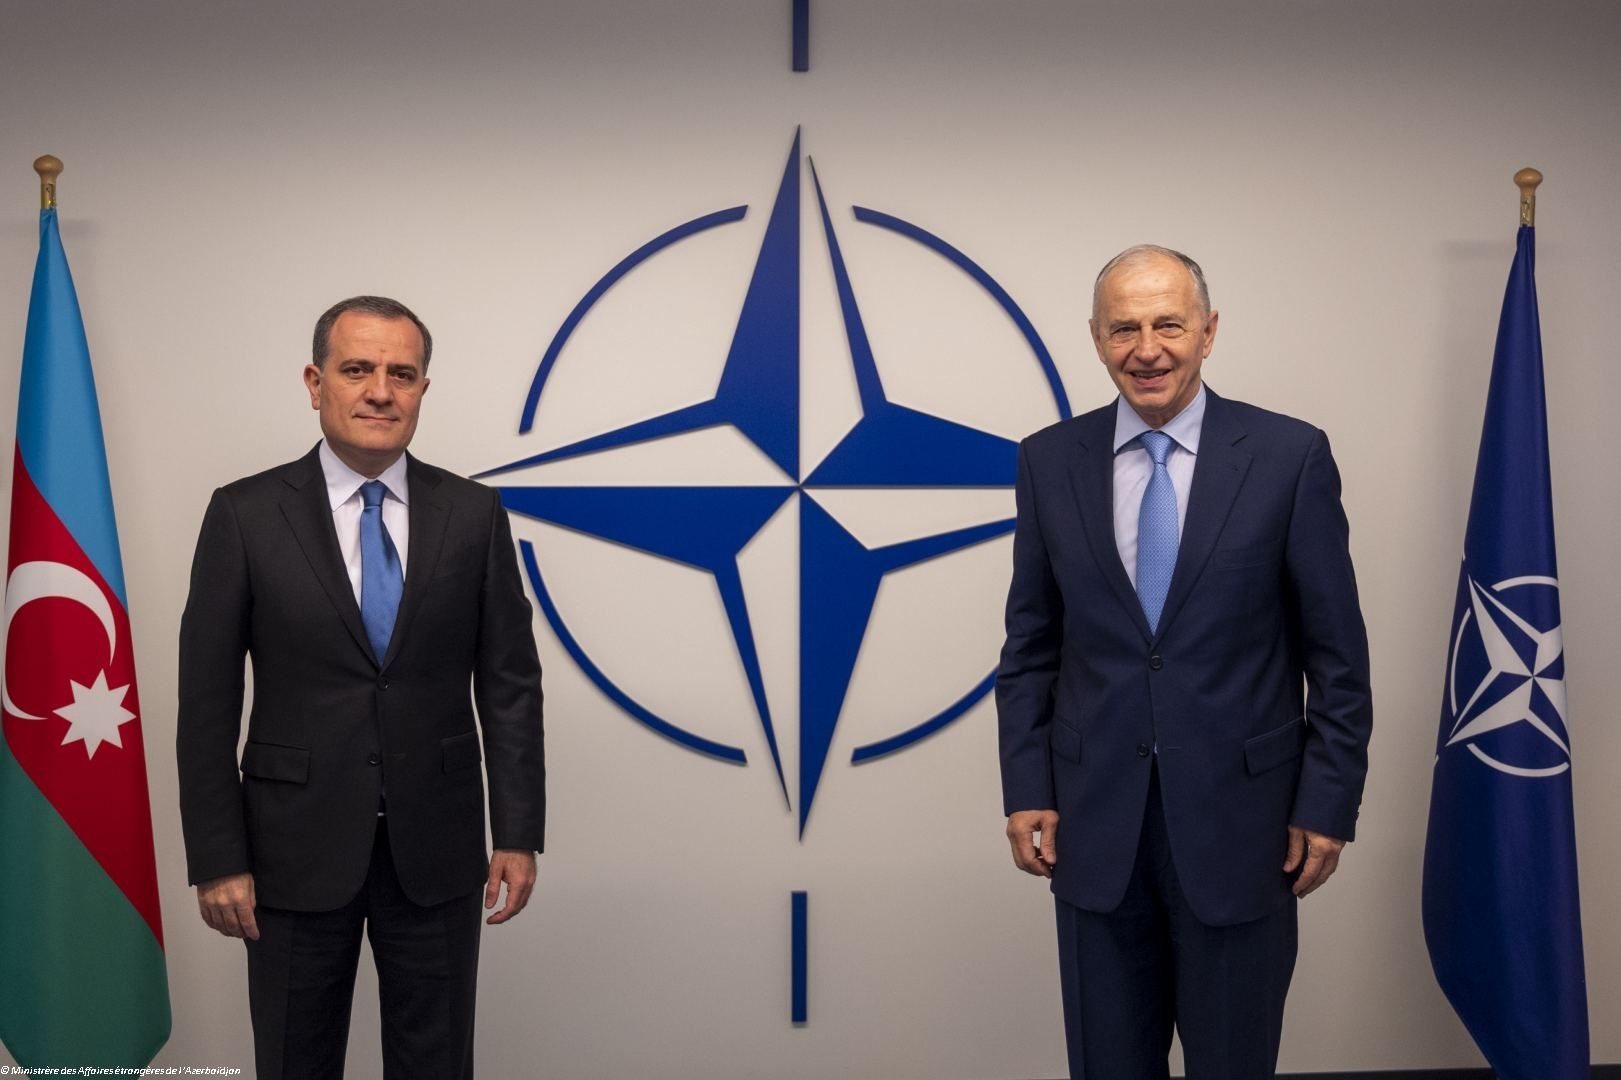 L'OTAN APPRÉCIE VIVEMENT LES RÉFORMES ENTREPRISES PAR L'AZERBAÏDJAN DANS LE DOMAINE DE LA DÉFENSE